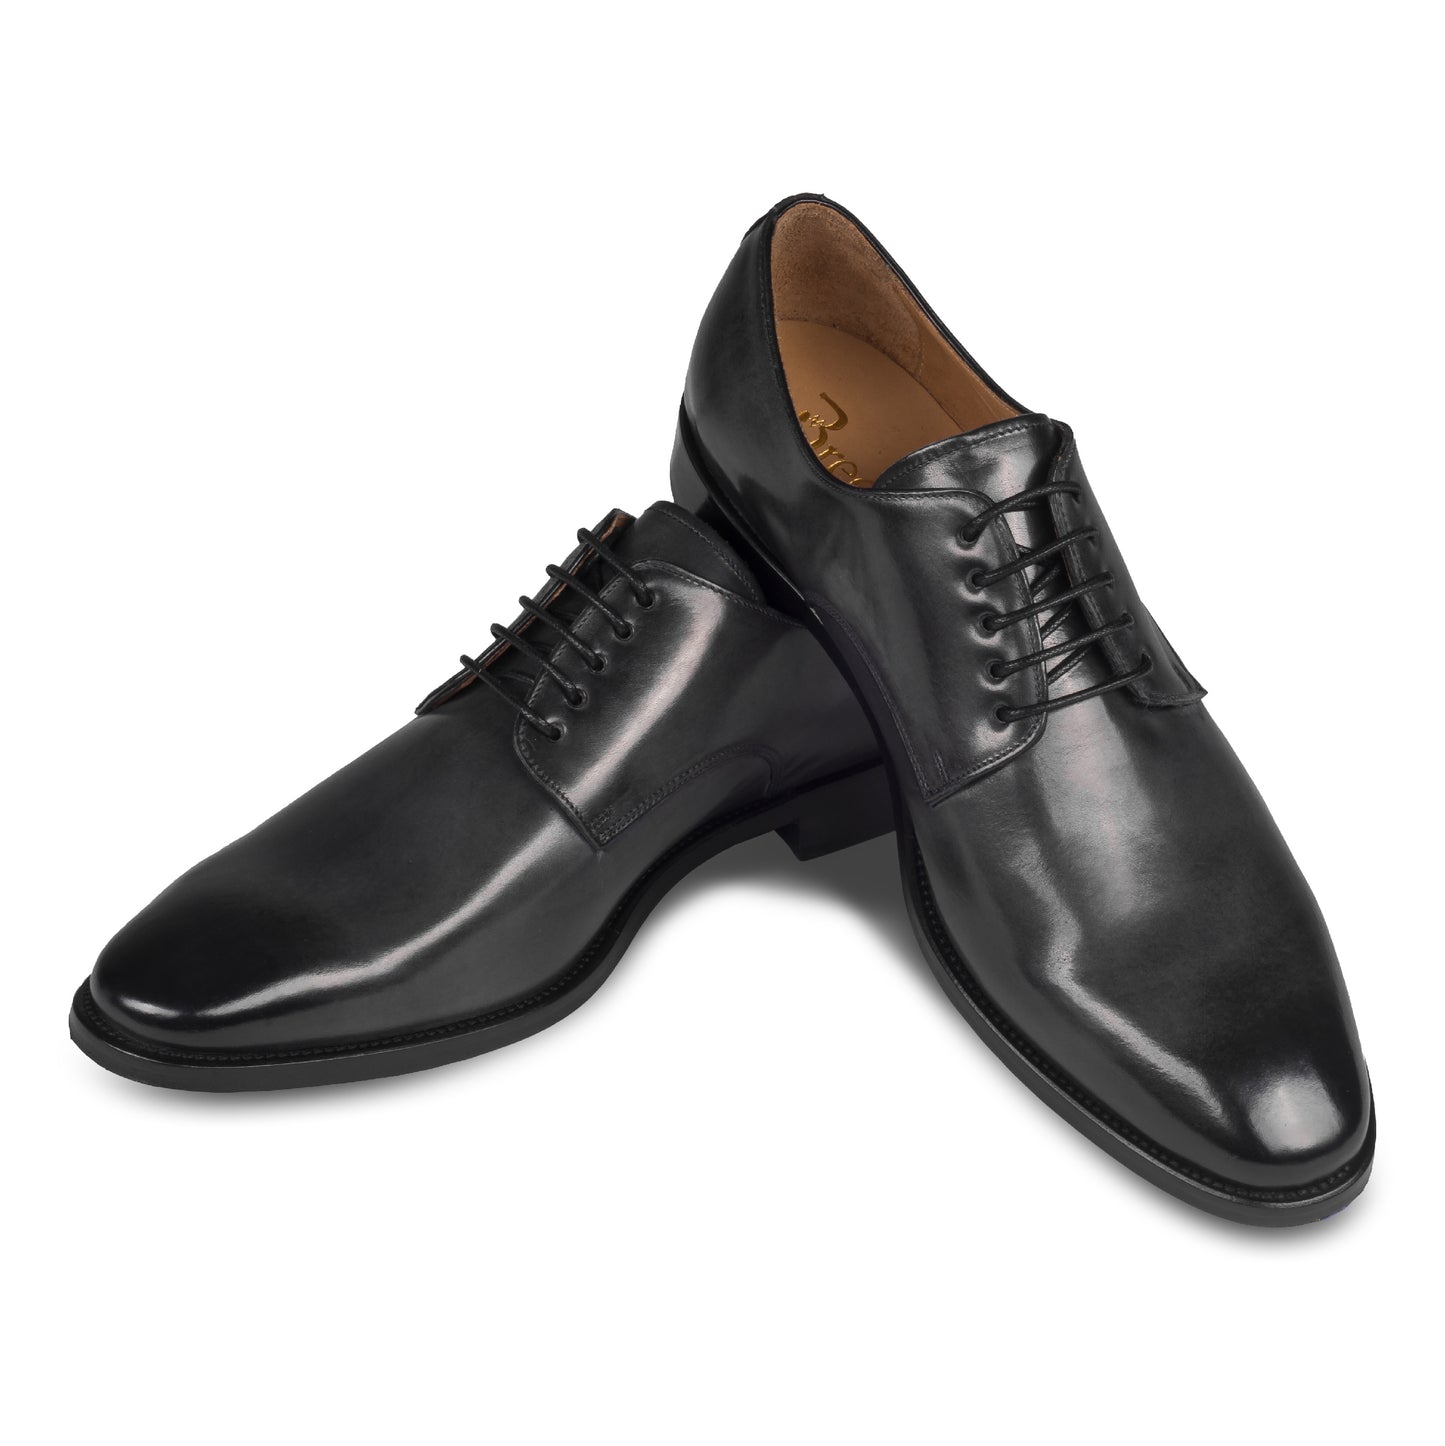 BRECOS – Italienische Herren Anzugschuhe, Plain Derby Schnürer in dunkel grau. Handgefertigt und durchgenäht. Schuhe paarweise überkreuzt aufgestellt. 